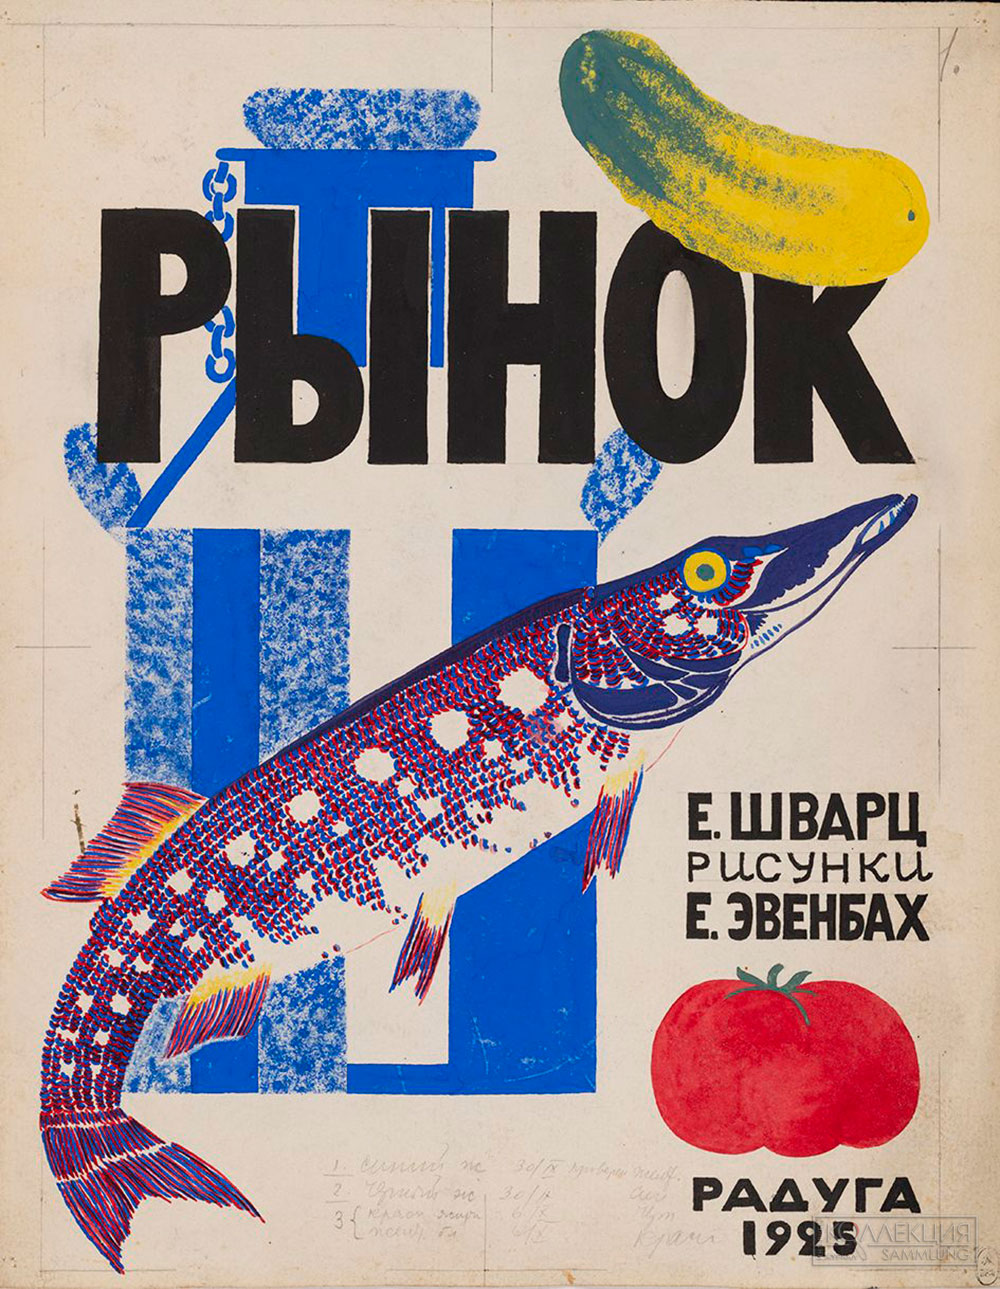 Эвенбах Е.К. Обложка книги Е. Шварца "Рынок". 1925